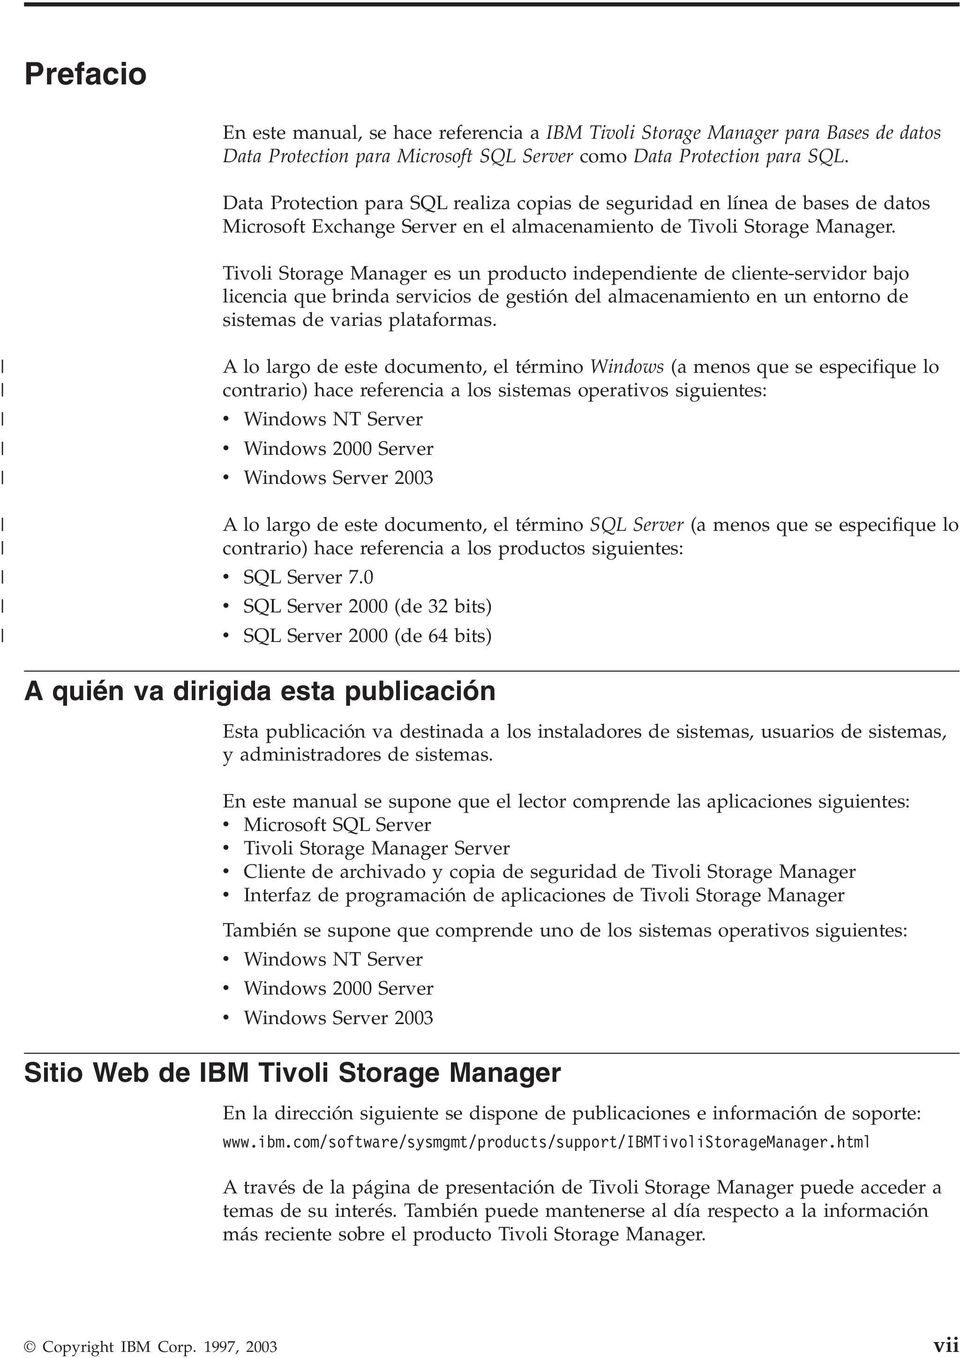 Tioli Storage Manager es un producto independiente de cliente-seridor bajo licencia que brinda sericios de gestión del almacenamiento en un entorno de sistemas de arias plataformas.